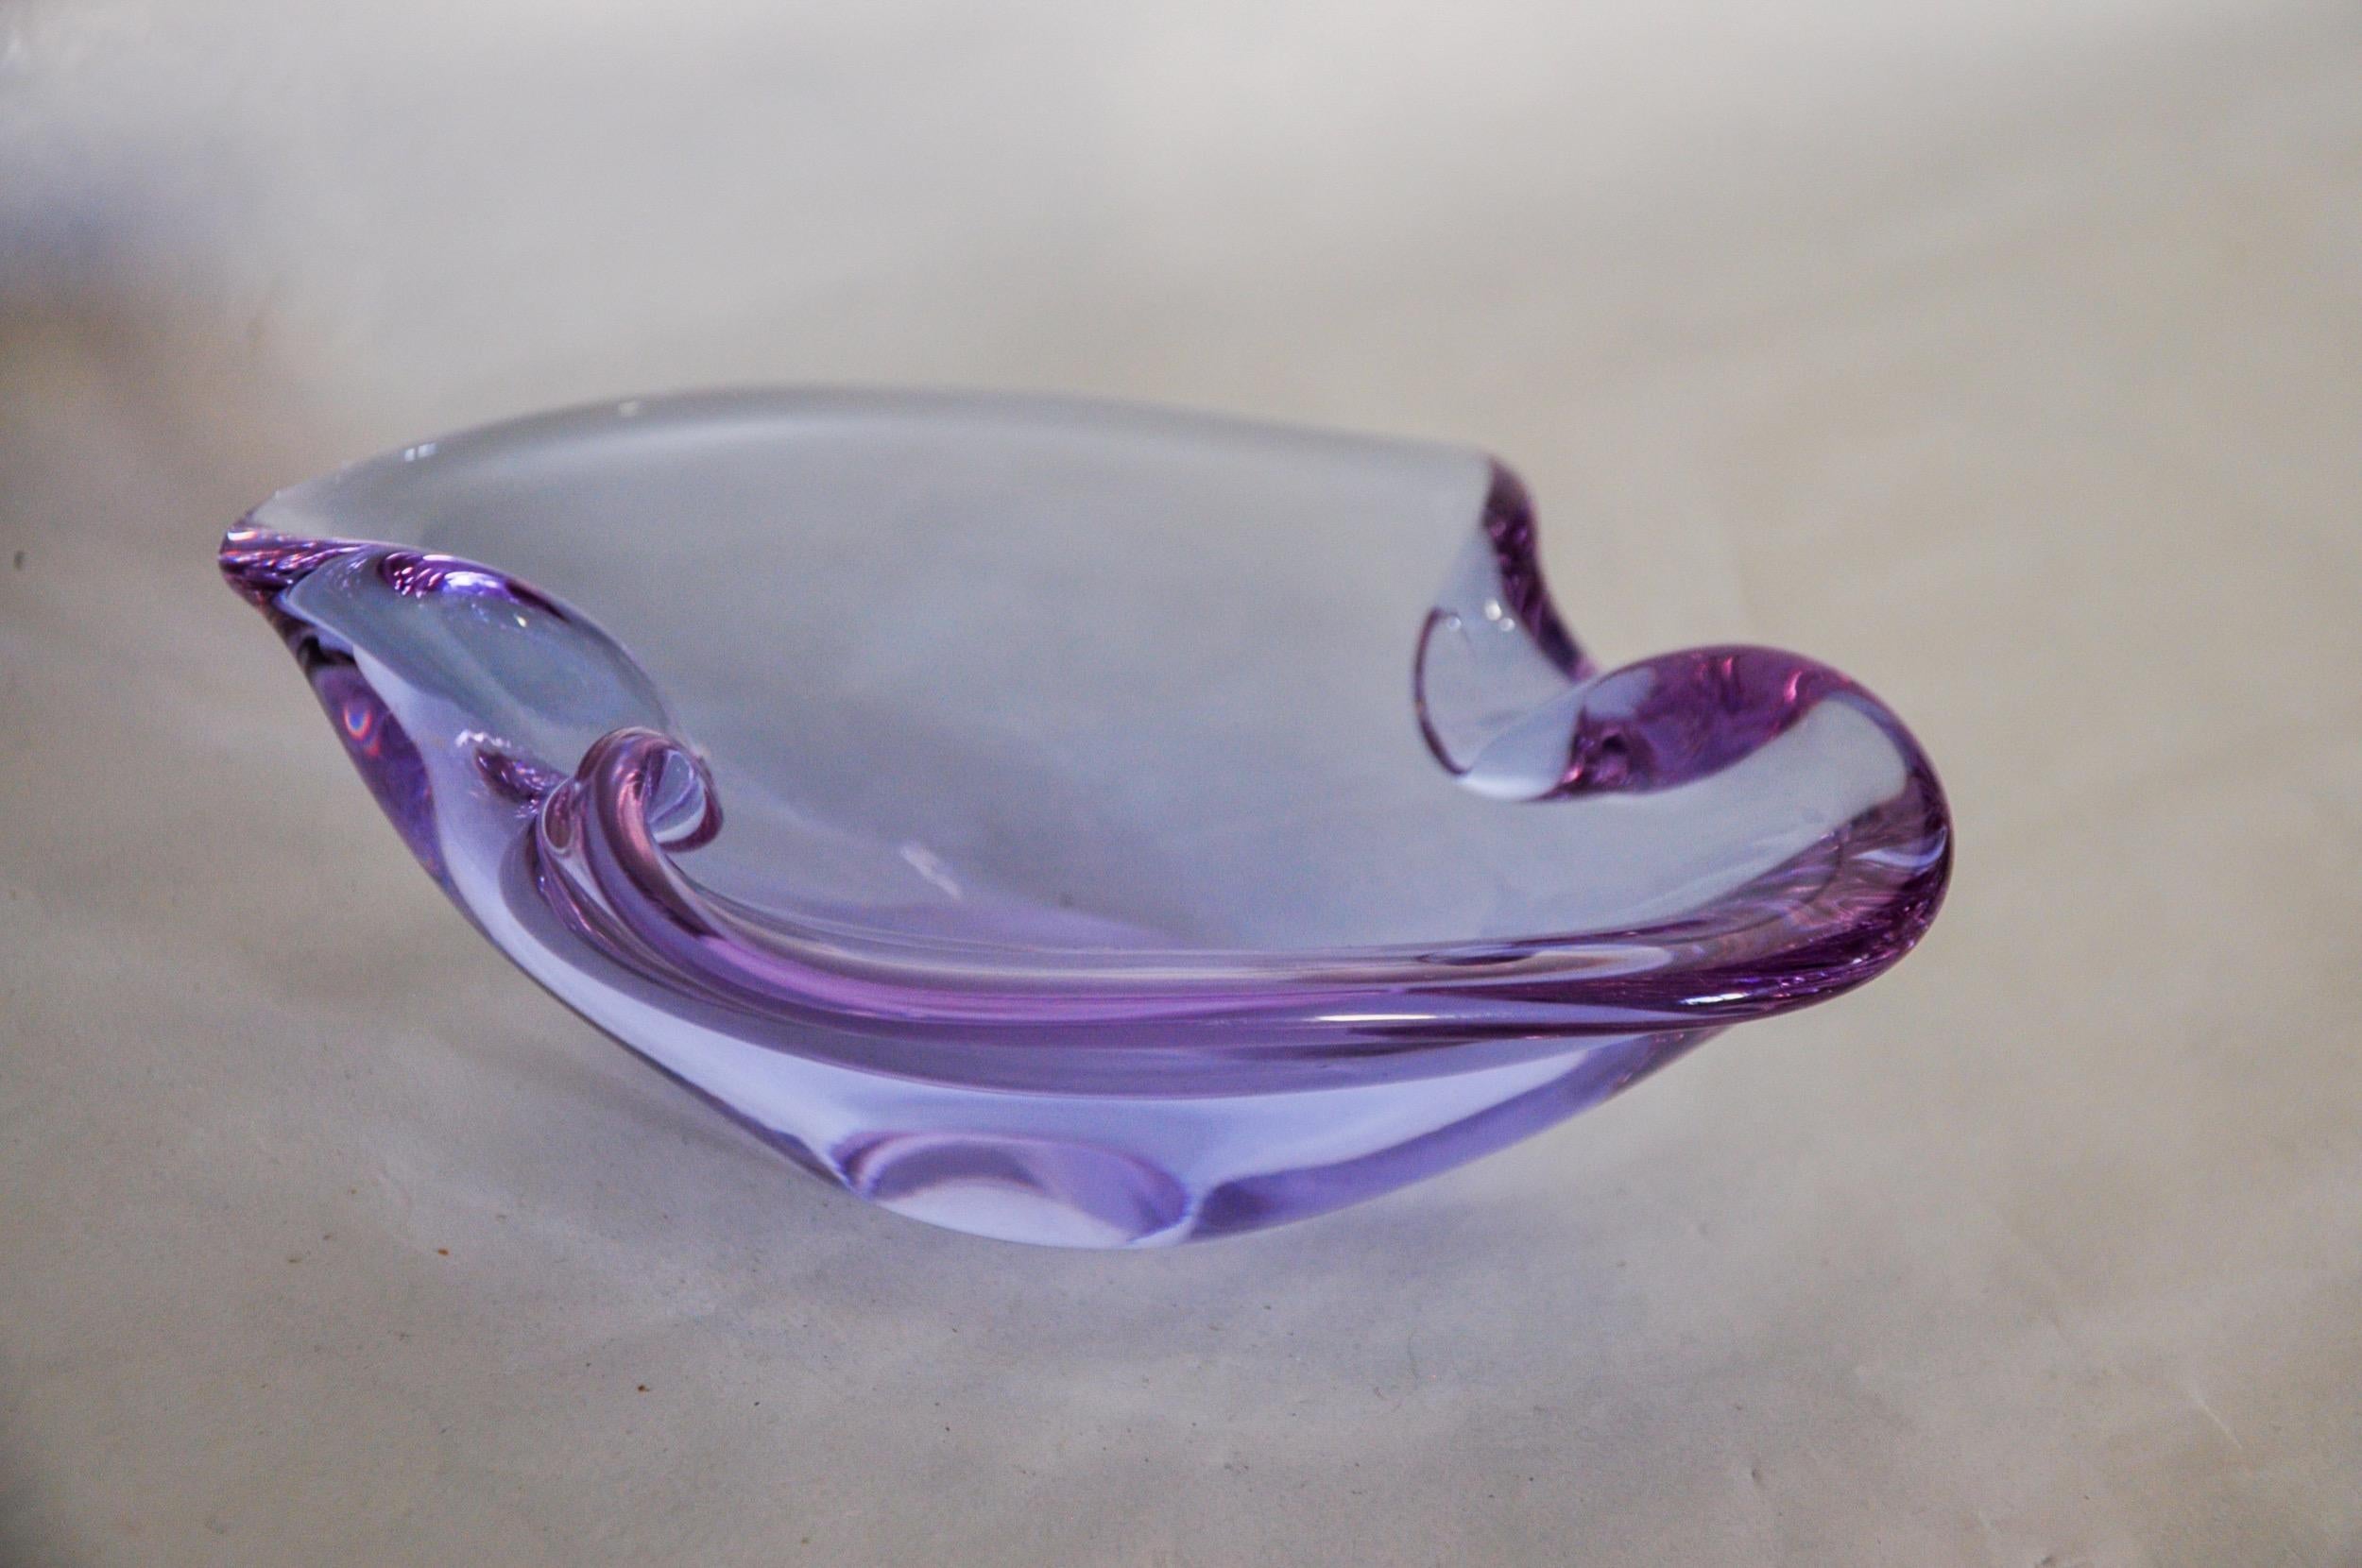 Prächtiger und seltener violetter Aschenbecher von Sommerso, entworfen und hergestellt für Seguso in Murano in den 1970er Jahren. Handgefertigtes Glas in der Sommerso-Technik (Überlagerung von Schichten aus geschmolzenem Glas). Prächtiges Sammel-